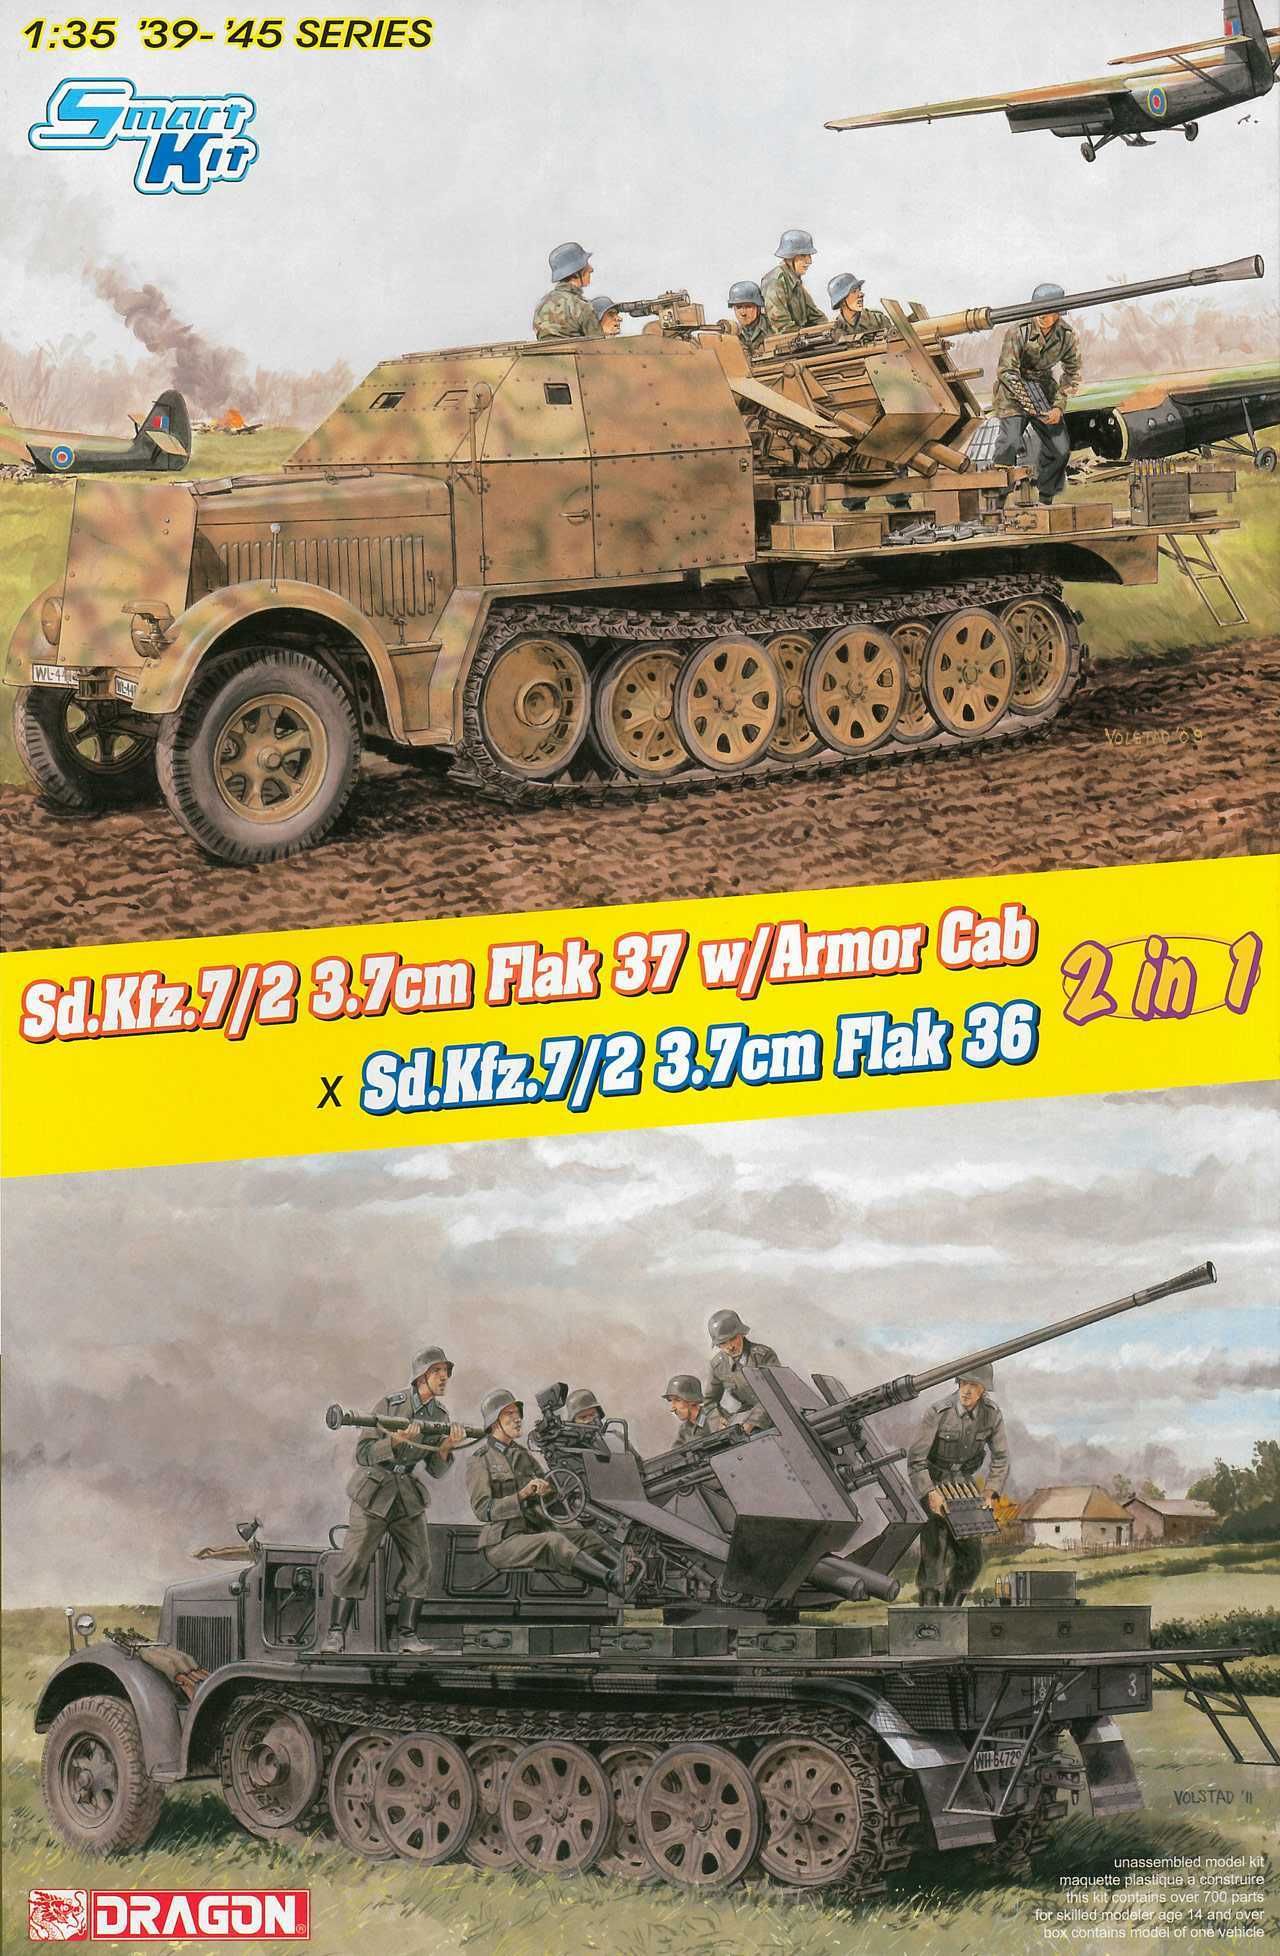 DRAGON Model Kit military 6953 - (2 in 1) Sd.Kfz.7/2 3.7cm FlaK 37 w/Armor Cab or Sd.Kfz.7/2 3.7cm FlaK 36 (1:35) - obrázek 1